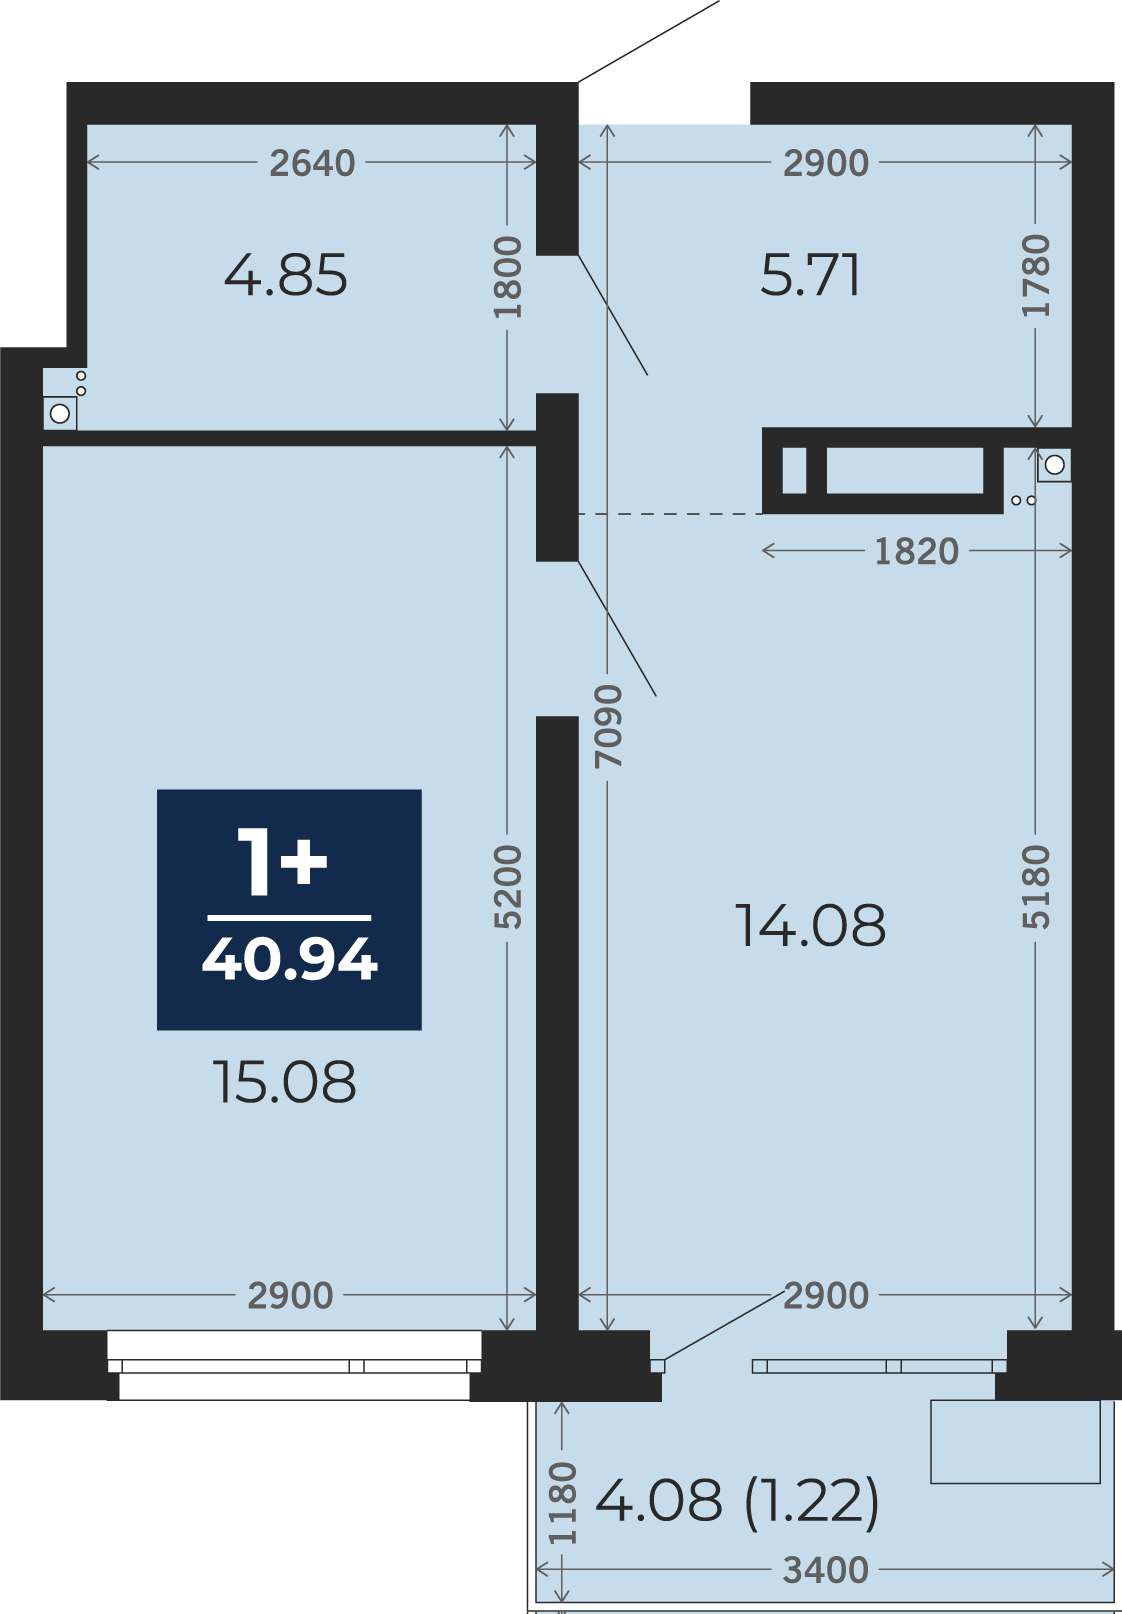 Квартира № 218, 1-комнатная, 40.94 кв. м, 17 этаж